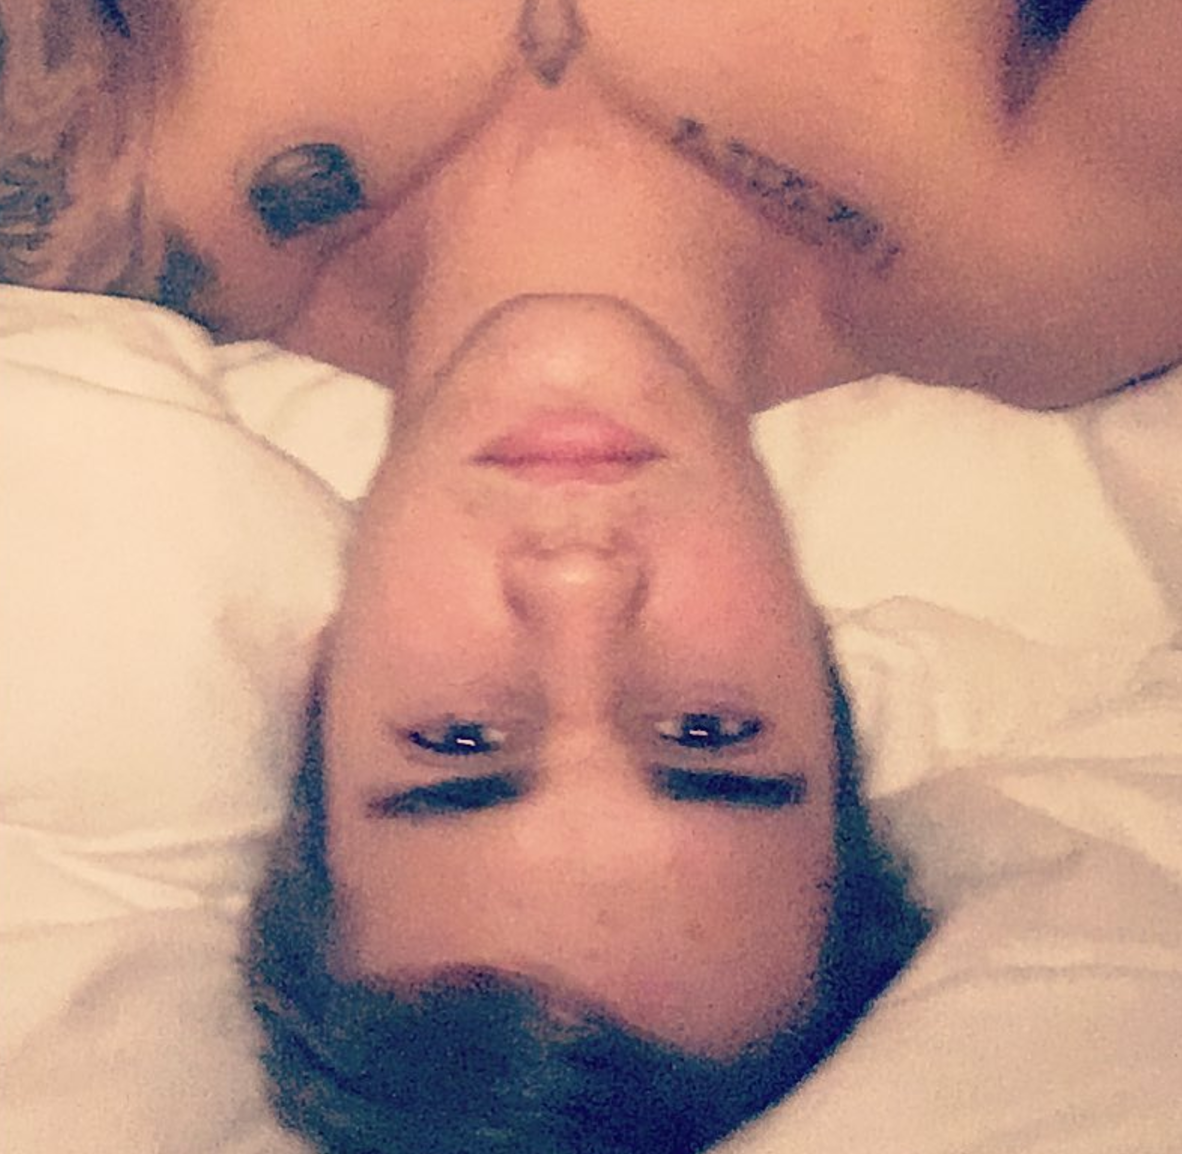 https://www.instagram.com/p/BUws82mDGqo/?taken-by=justinbieber&hl=en